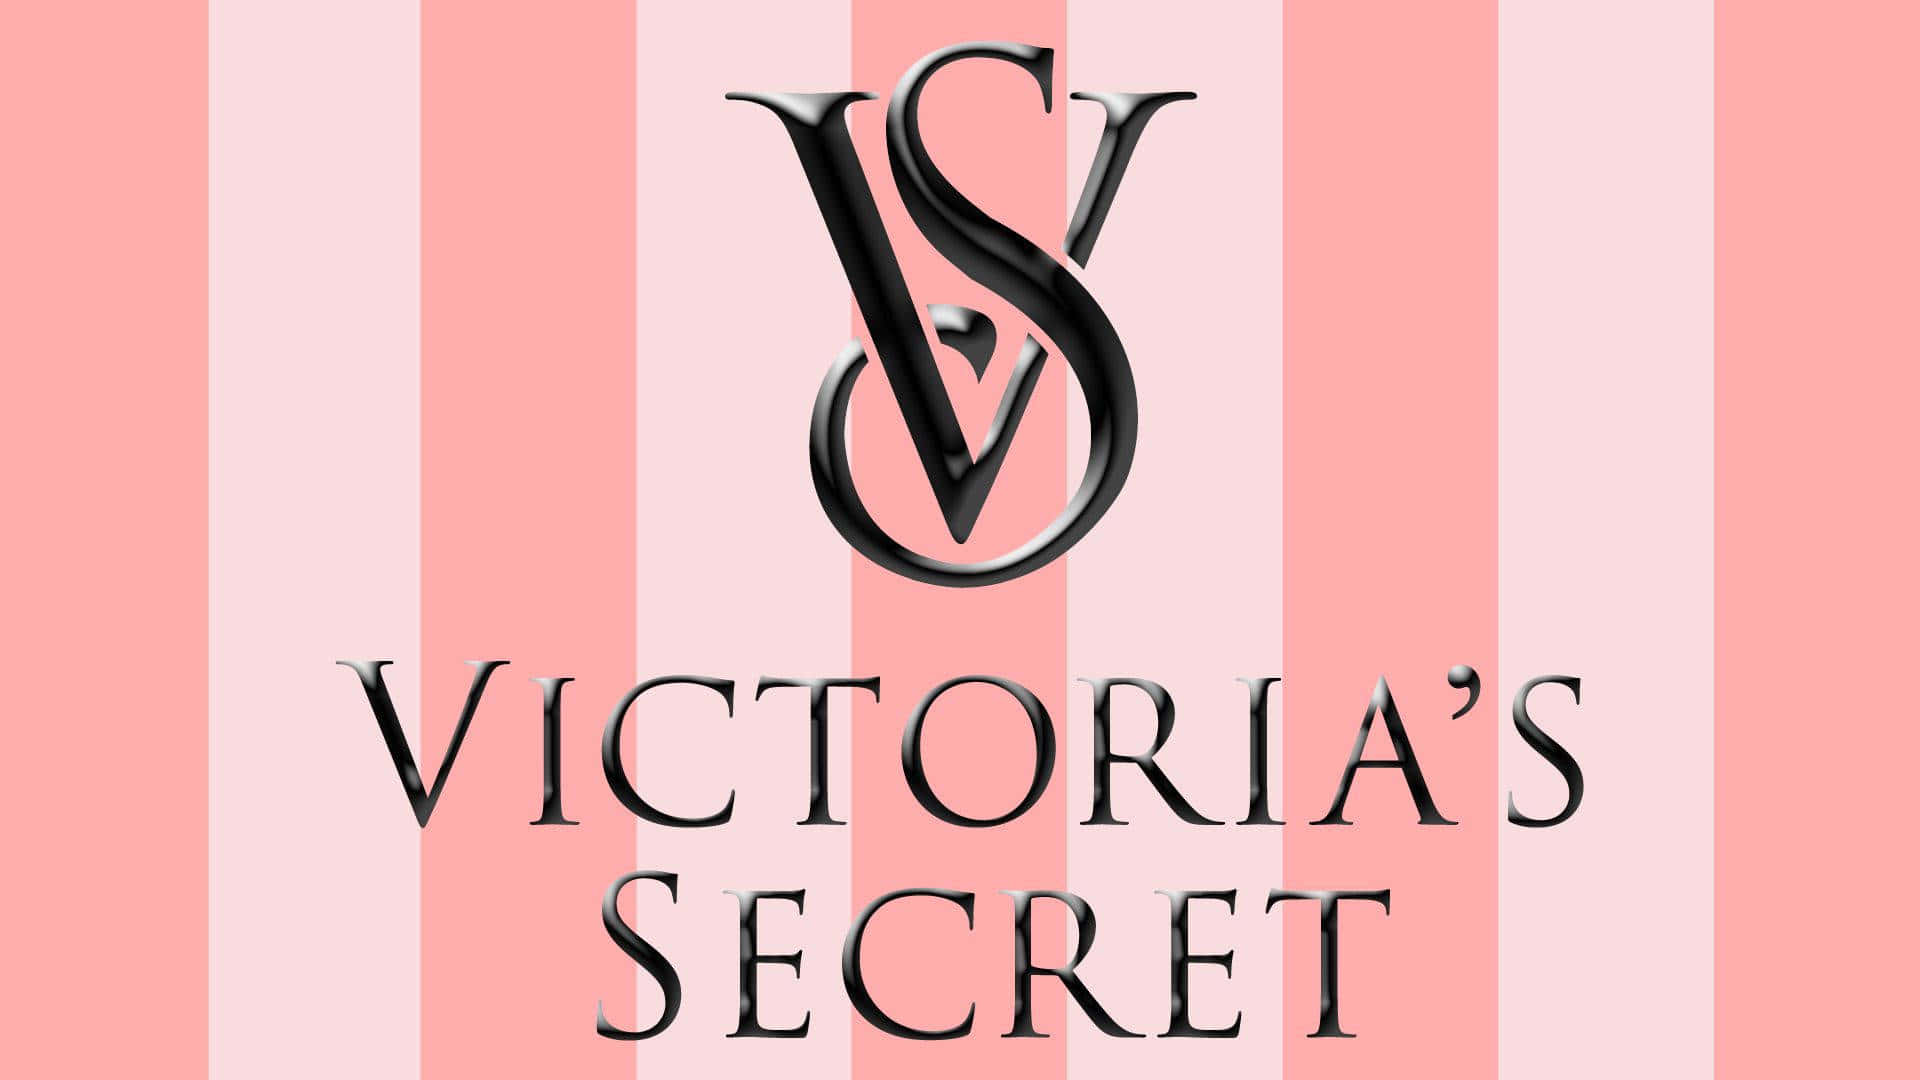 Victoria'ssecret Hintergrund 1920 X 1080